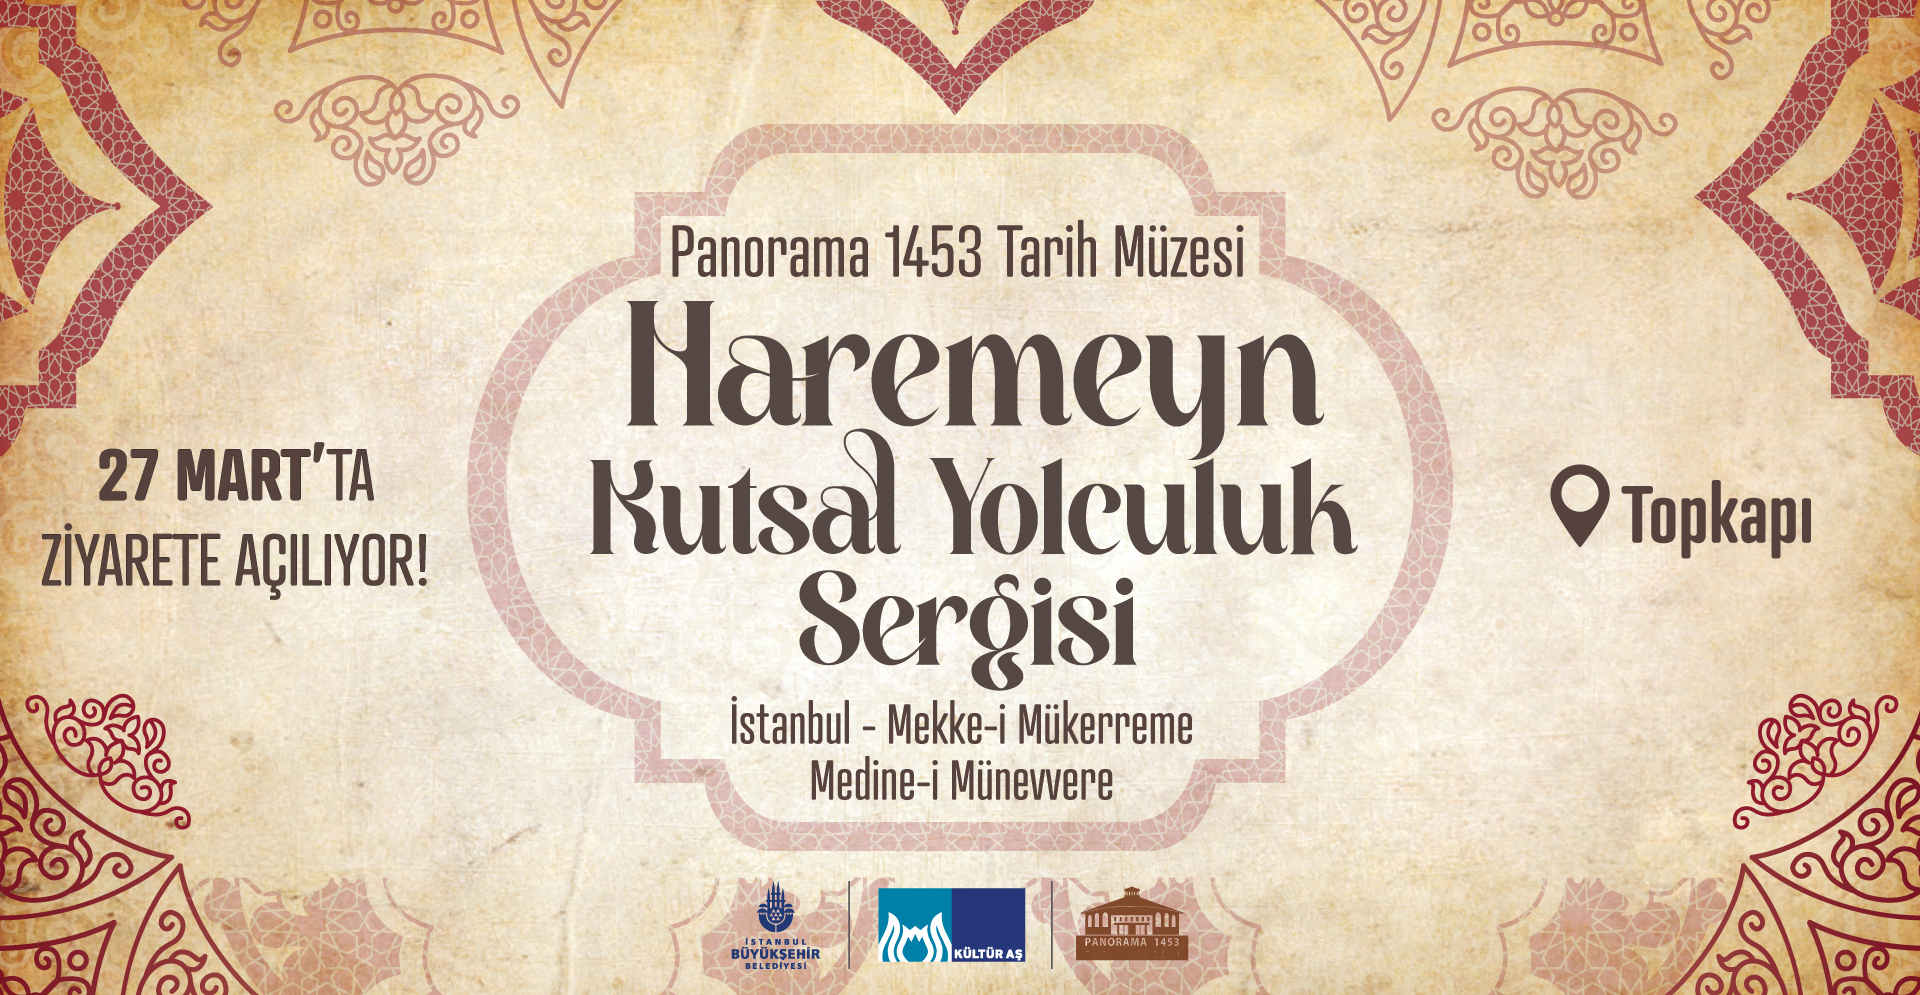 Haremeyn – Kutsal Yolculuk Sergisi 27 Mart’ta Panorama 1453 Tarih Müzesi’nde açılacak